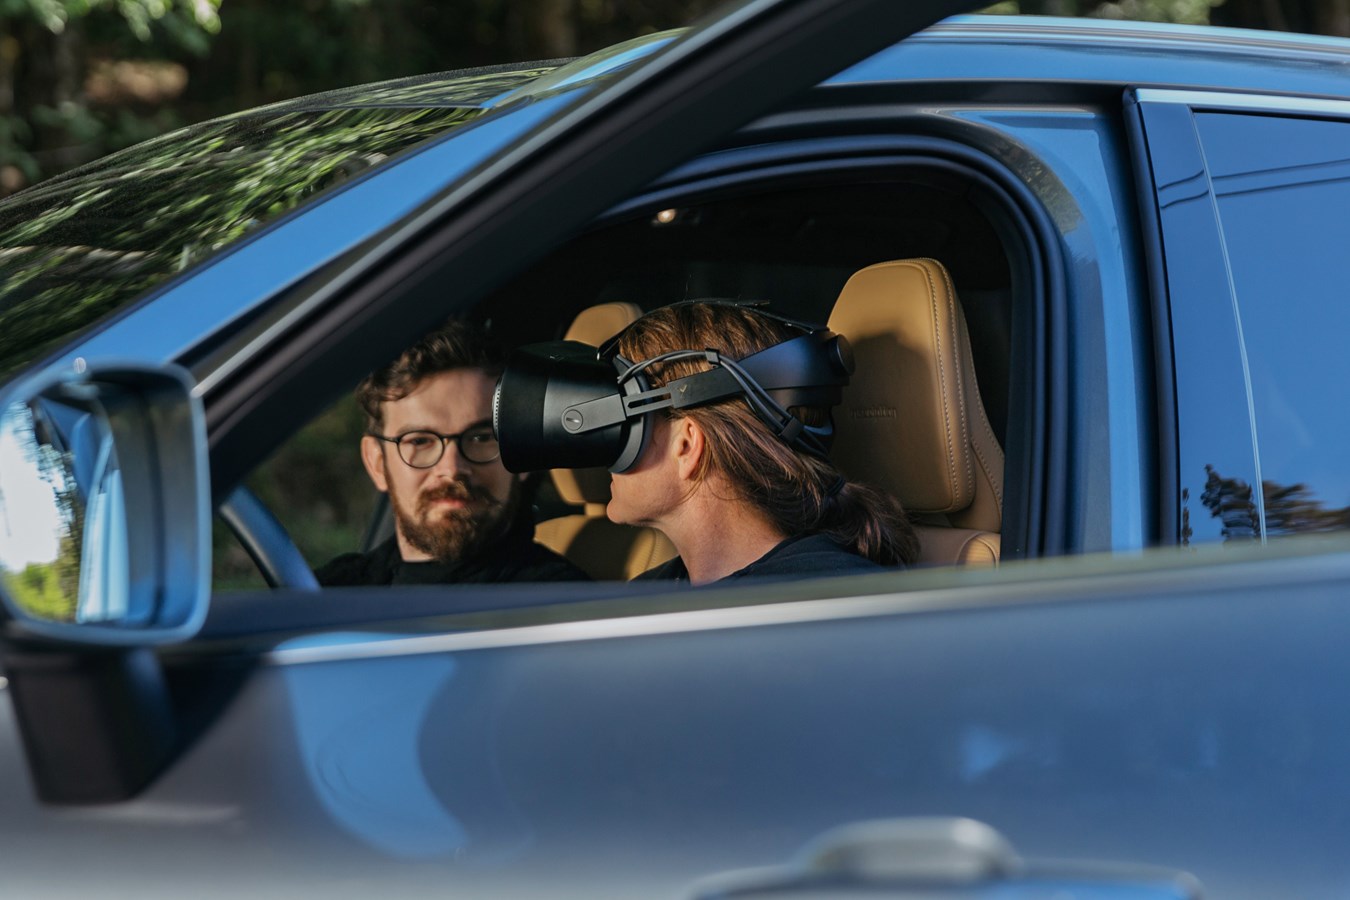 Fahrzeugentwicklung mit Varjo XR-1 Mixed-Reality-Headset: Volvo und Varjo verschmelzen reale und virtuelle Welt